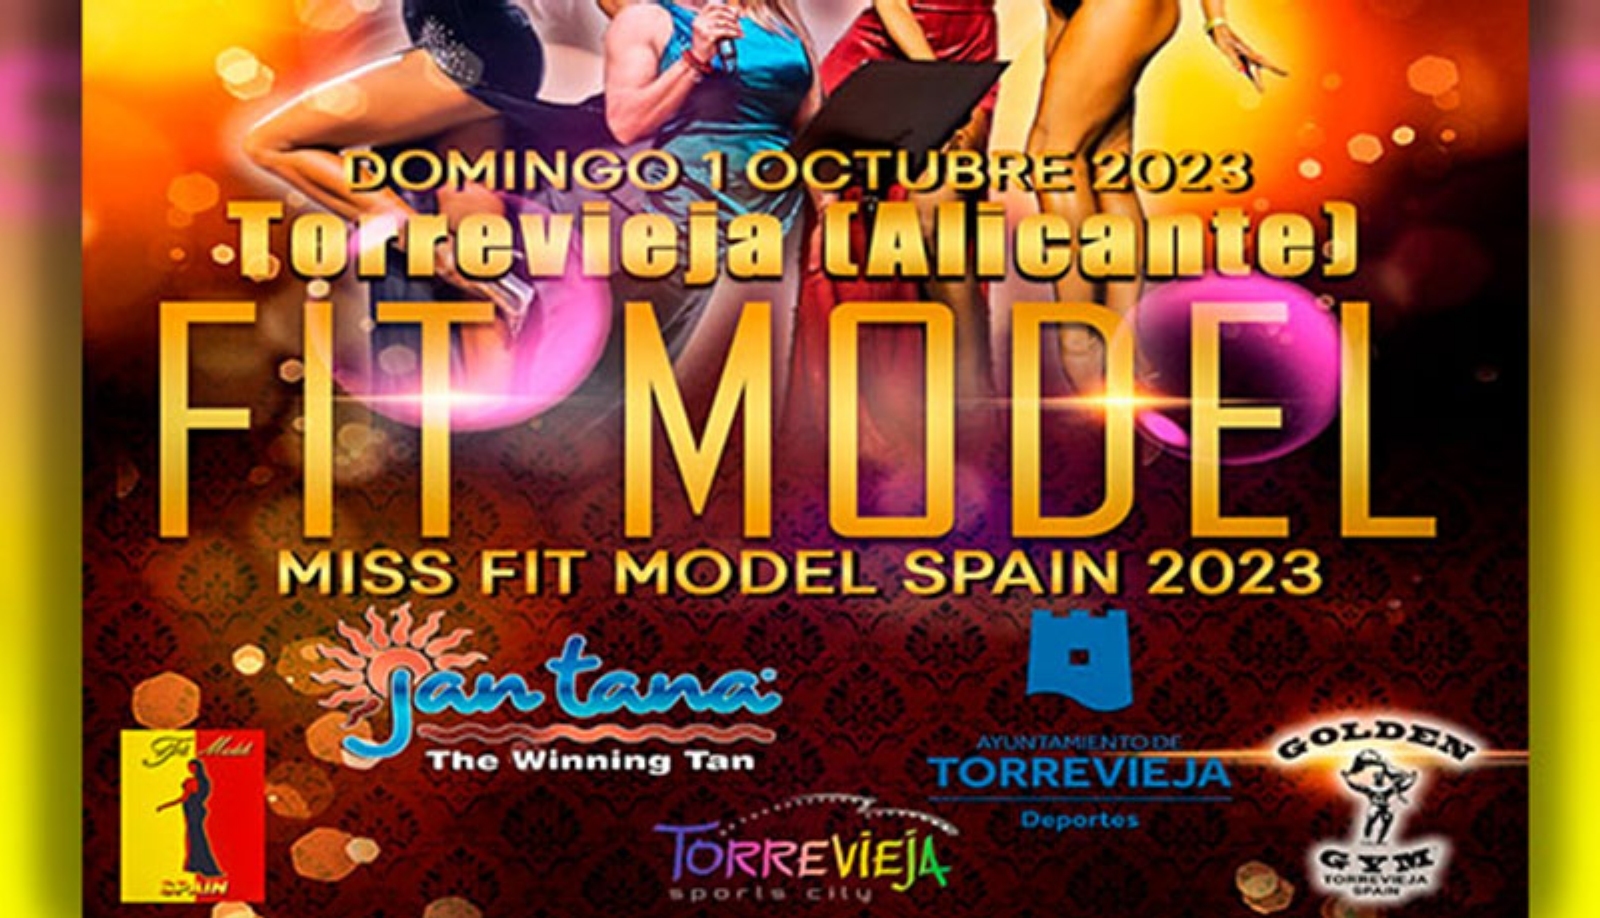 Miss Fit Model Spain 2023 en Torrevieja